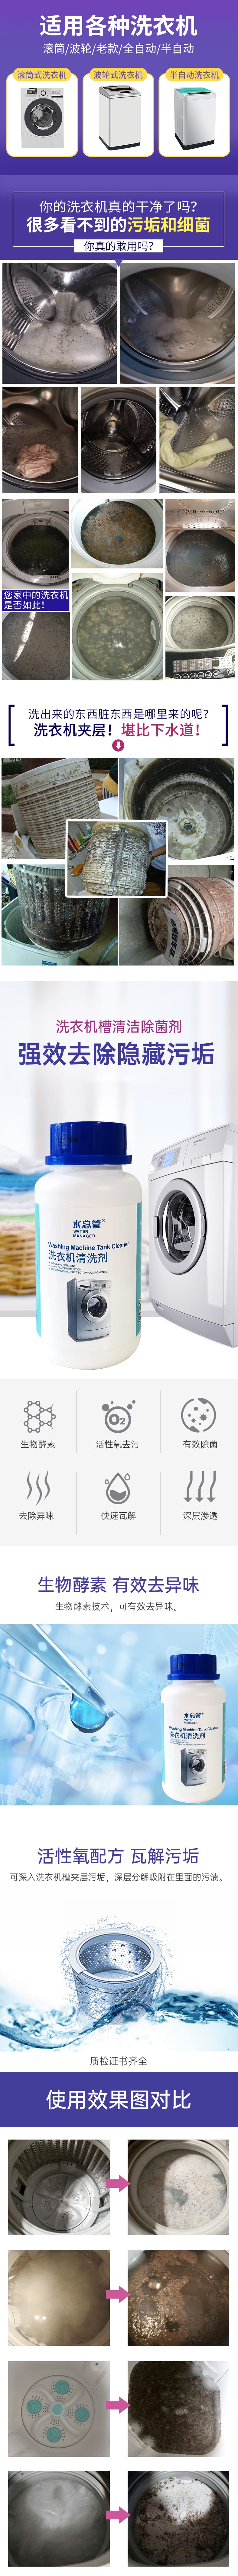 水总管:洗衣机清洗剂